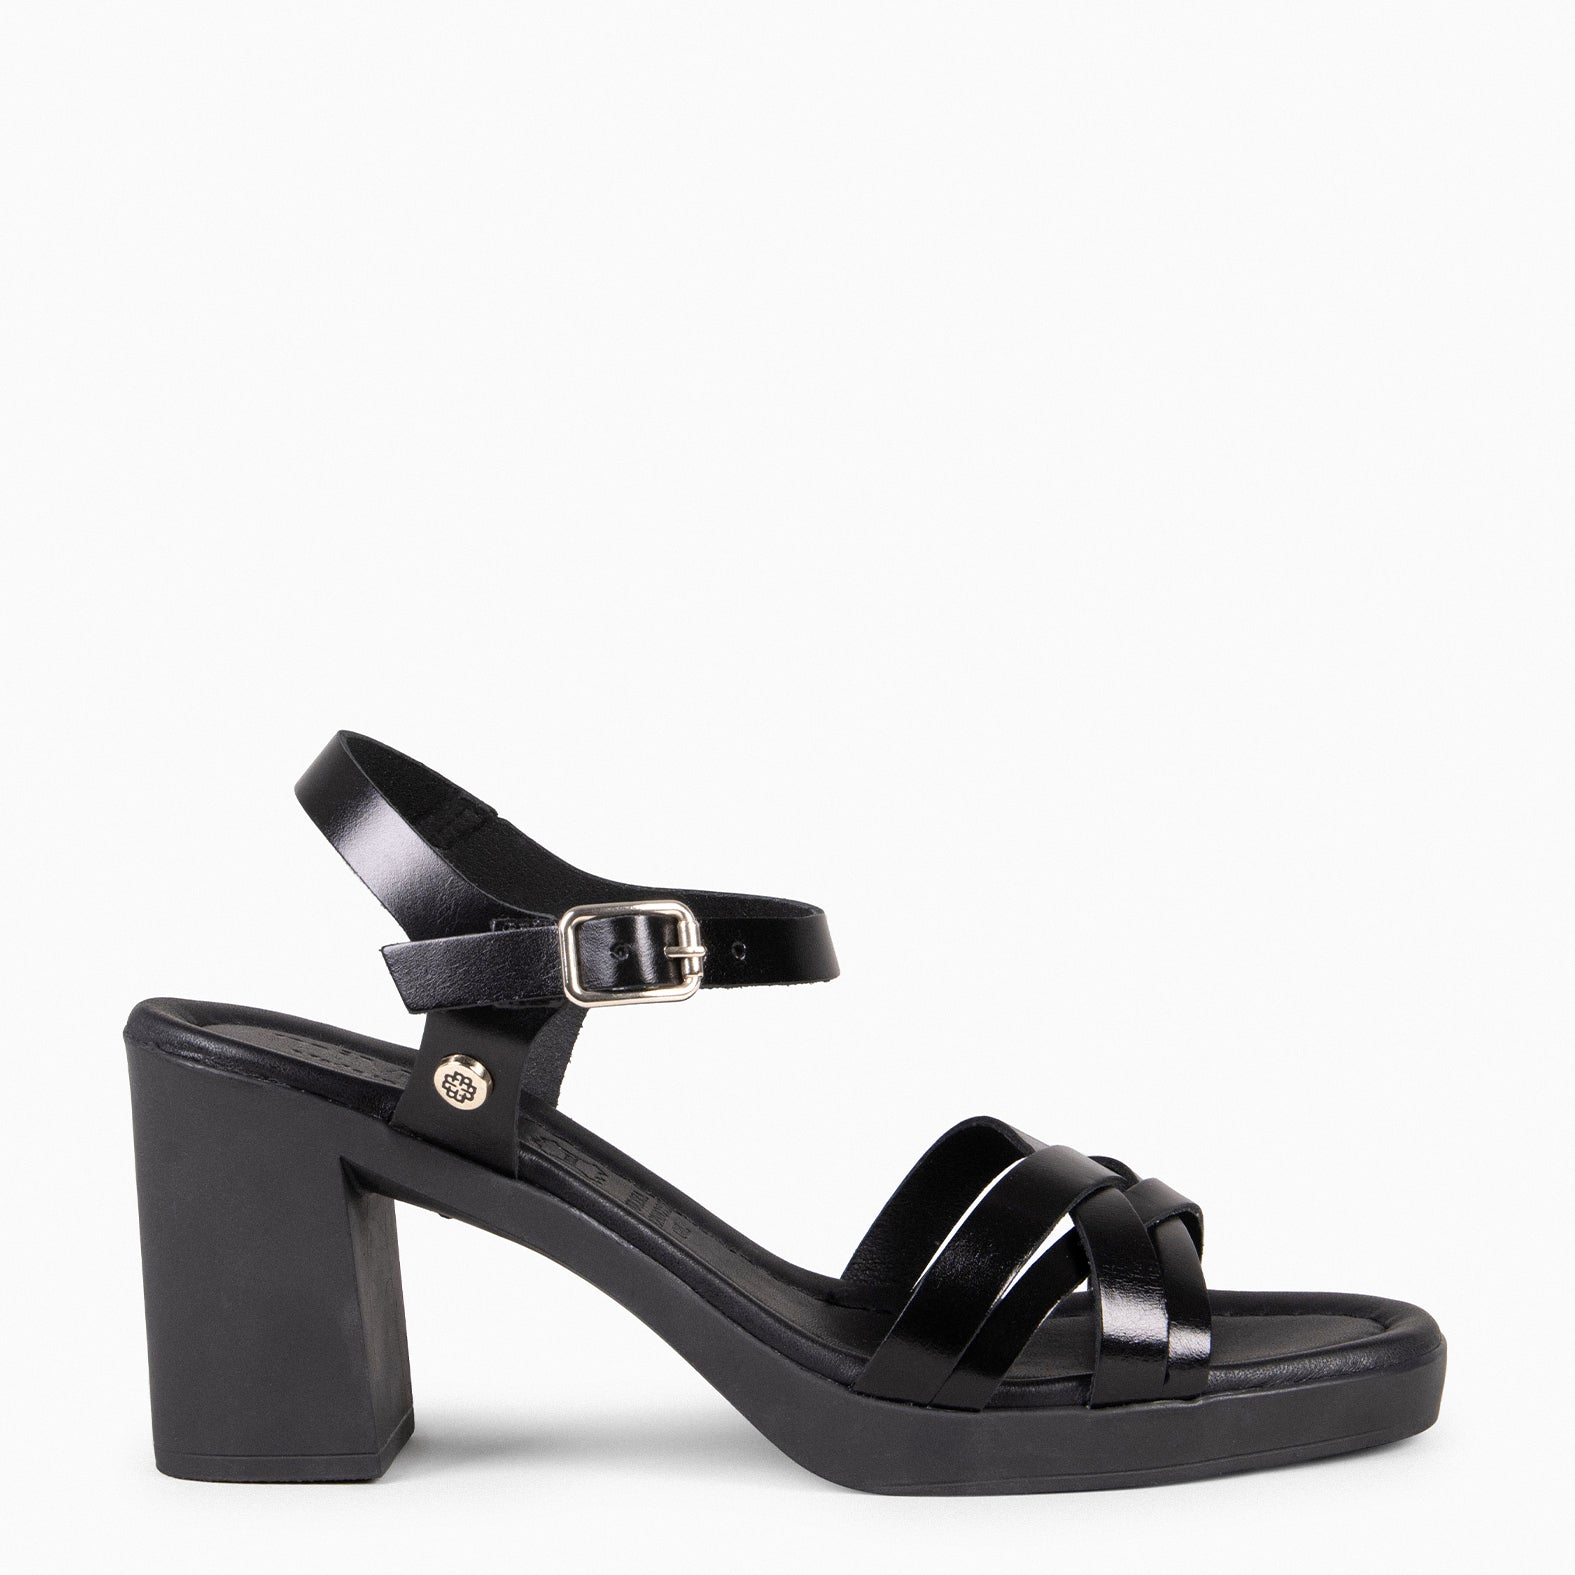 AROA - BLACK High-heel Sandals